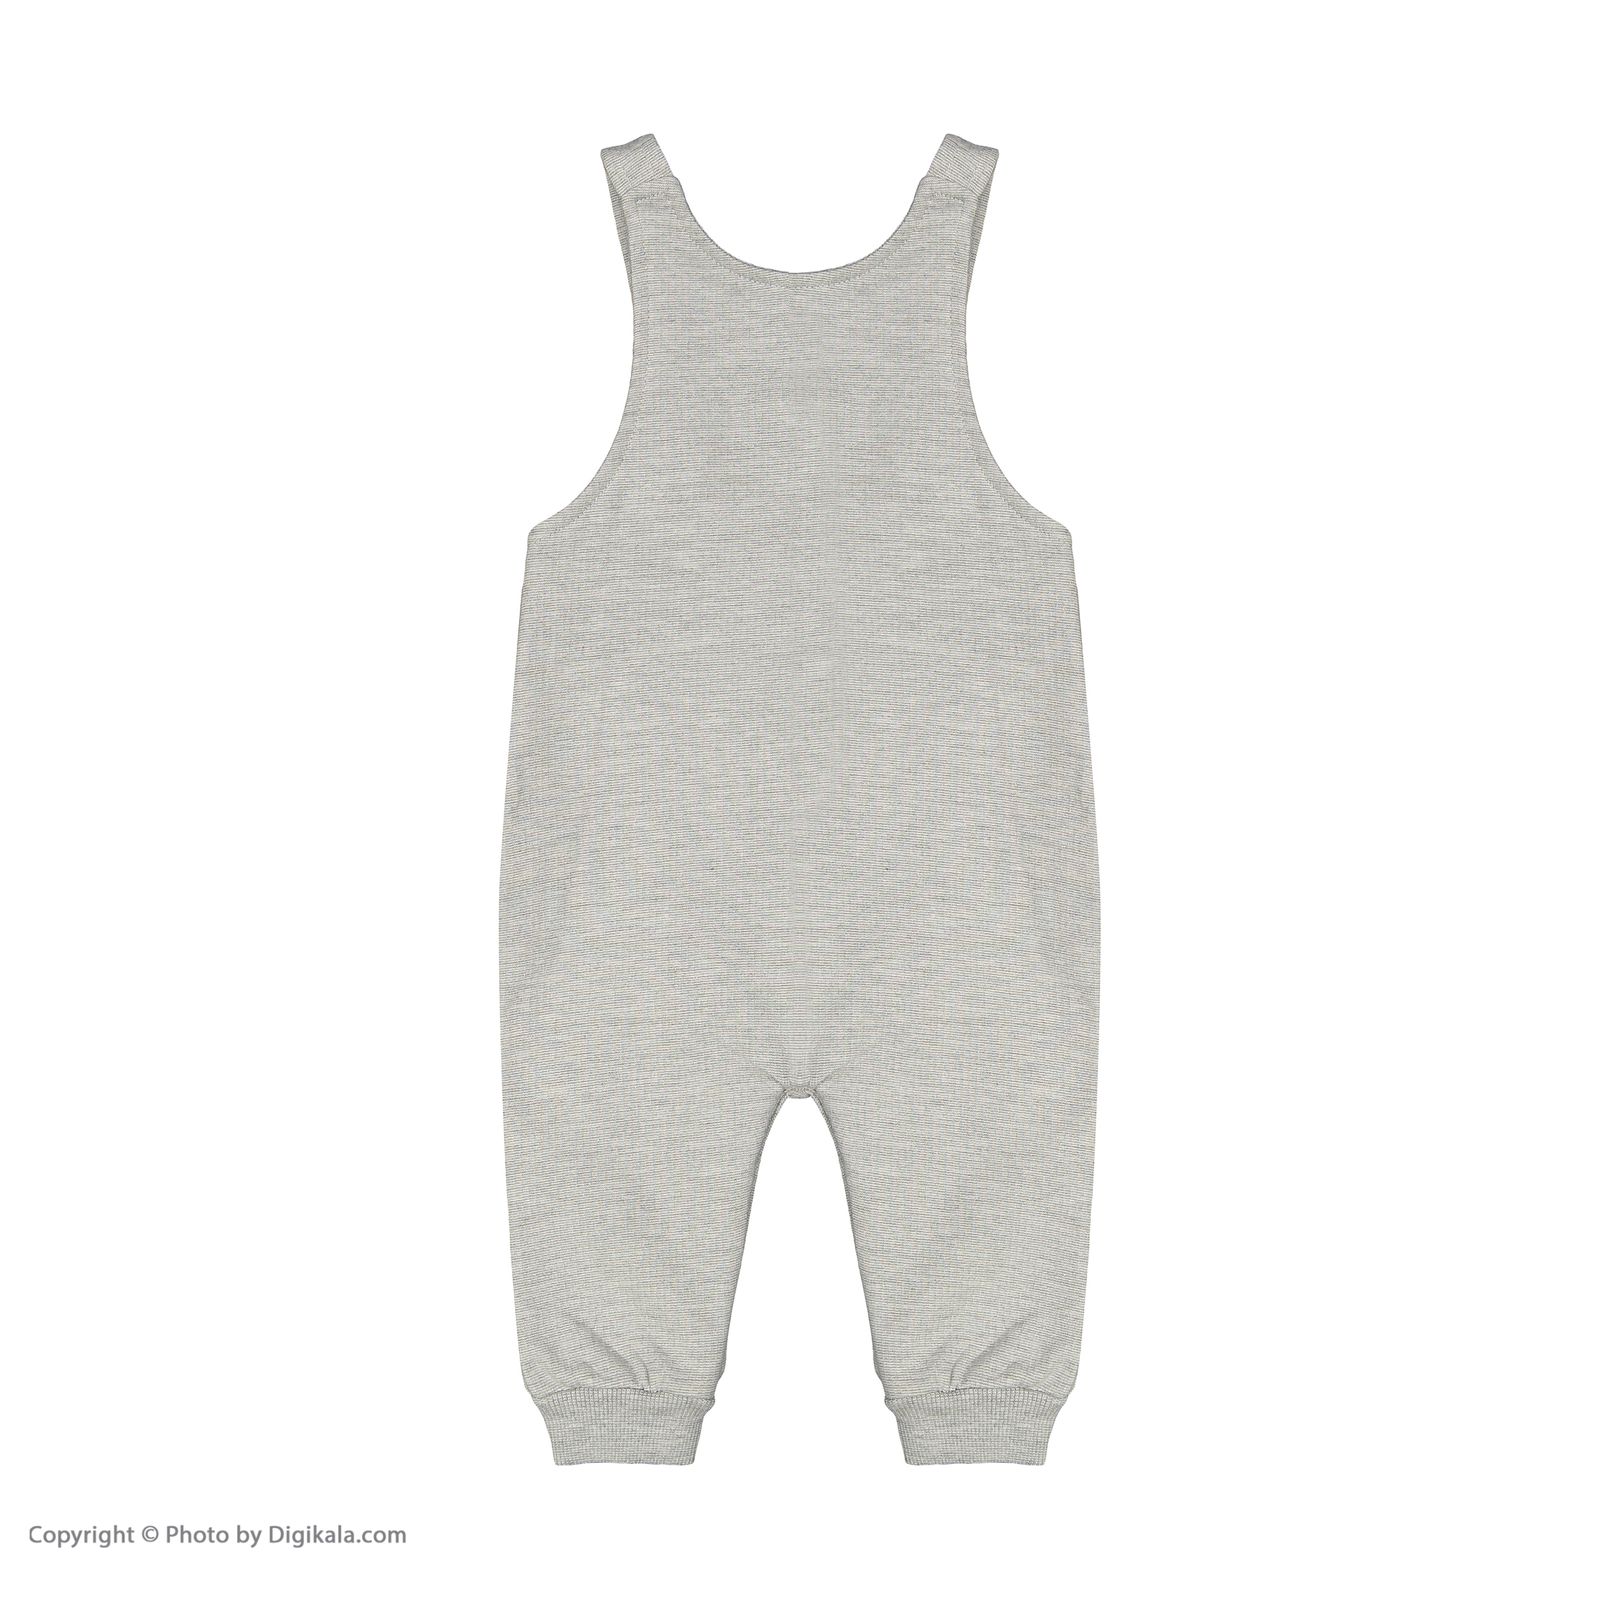 ست 4 تکه لباس نوزادی پسرانه نیلی مدل 21611451-gray -  - 8